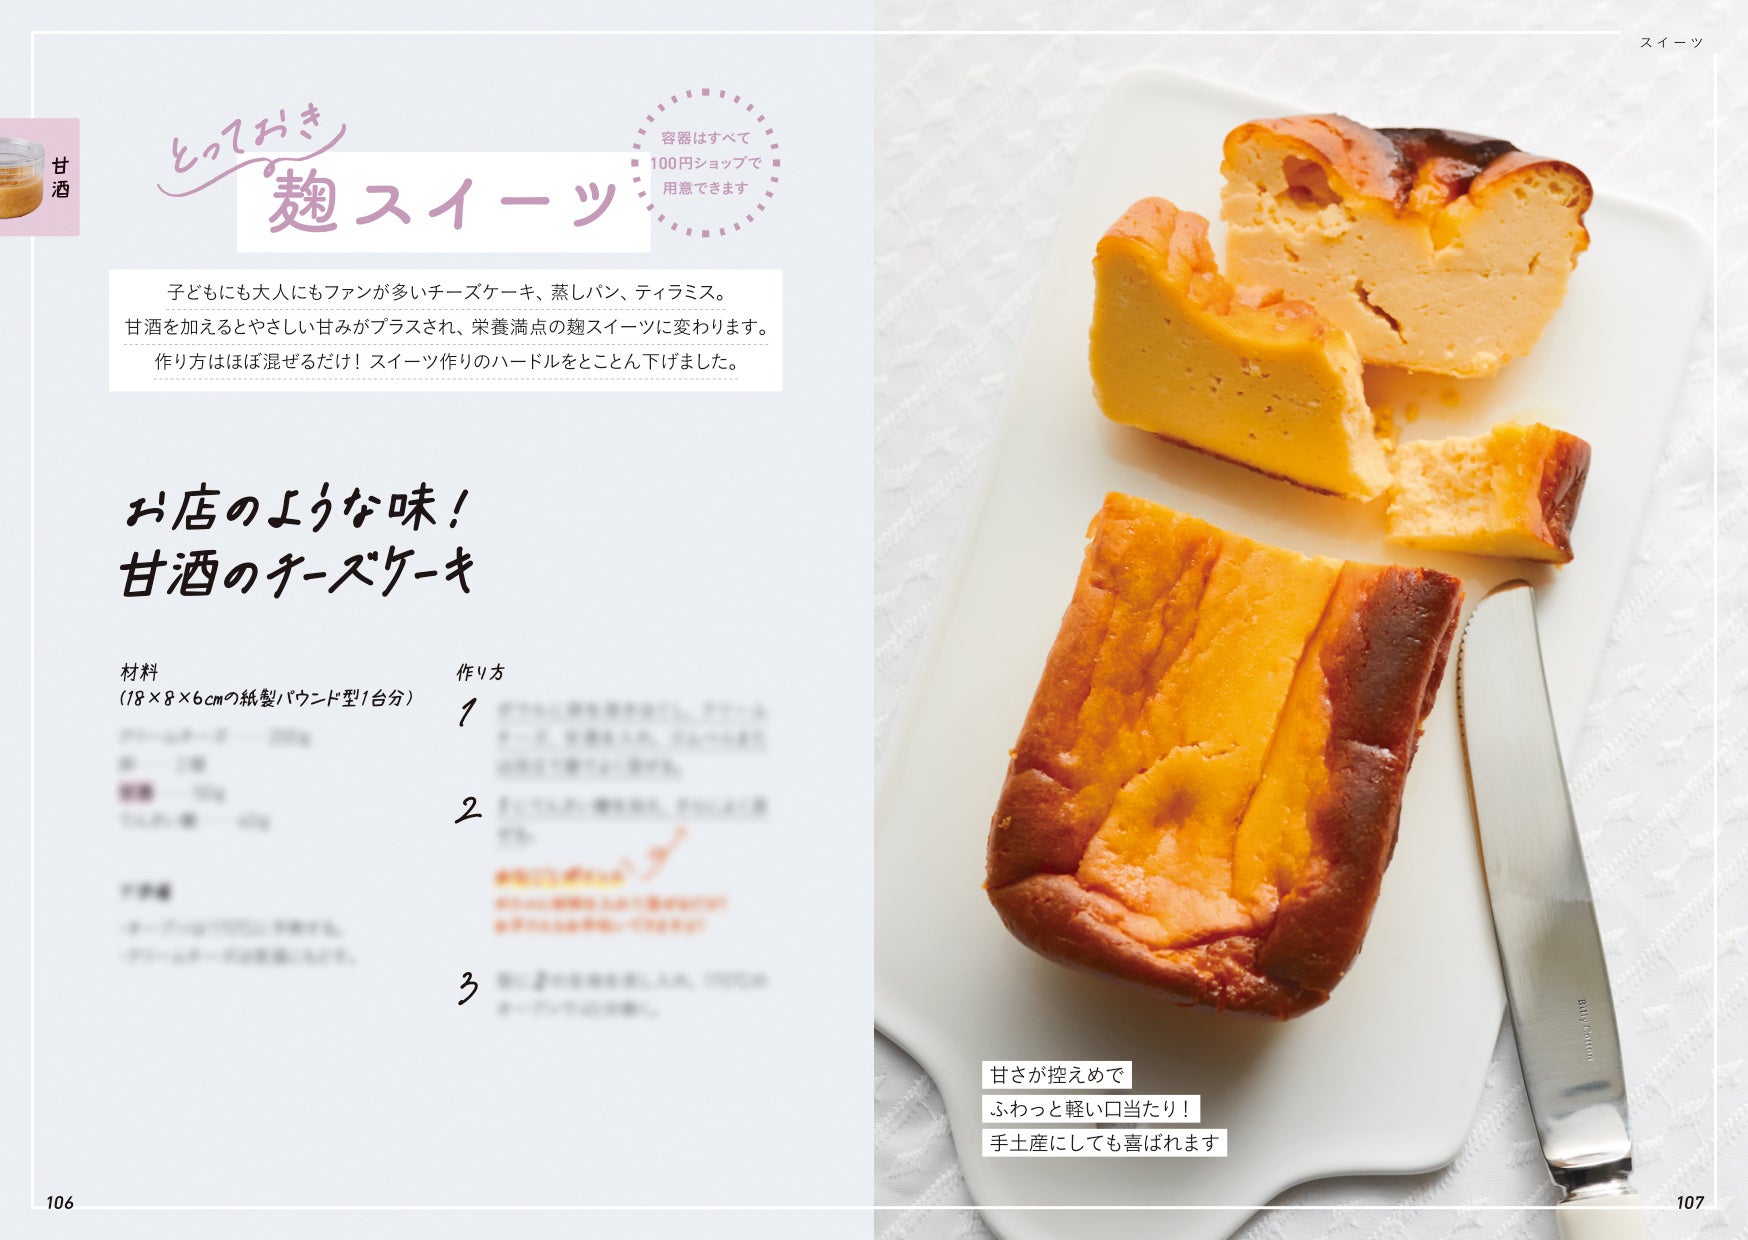 【6月27日発売】ほったらかしでおいしい！麹の力で簡単レシピ『ほったらかし麹レシピ』が発売